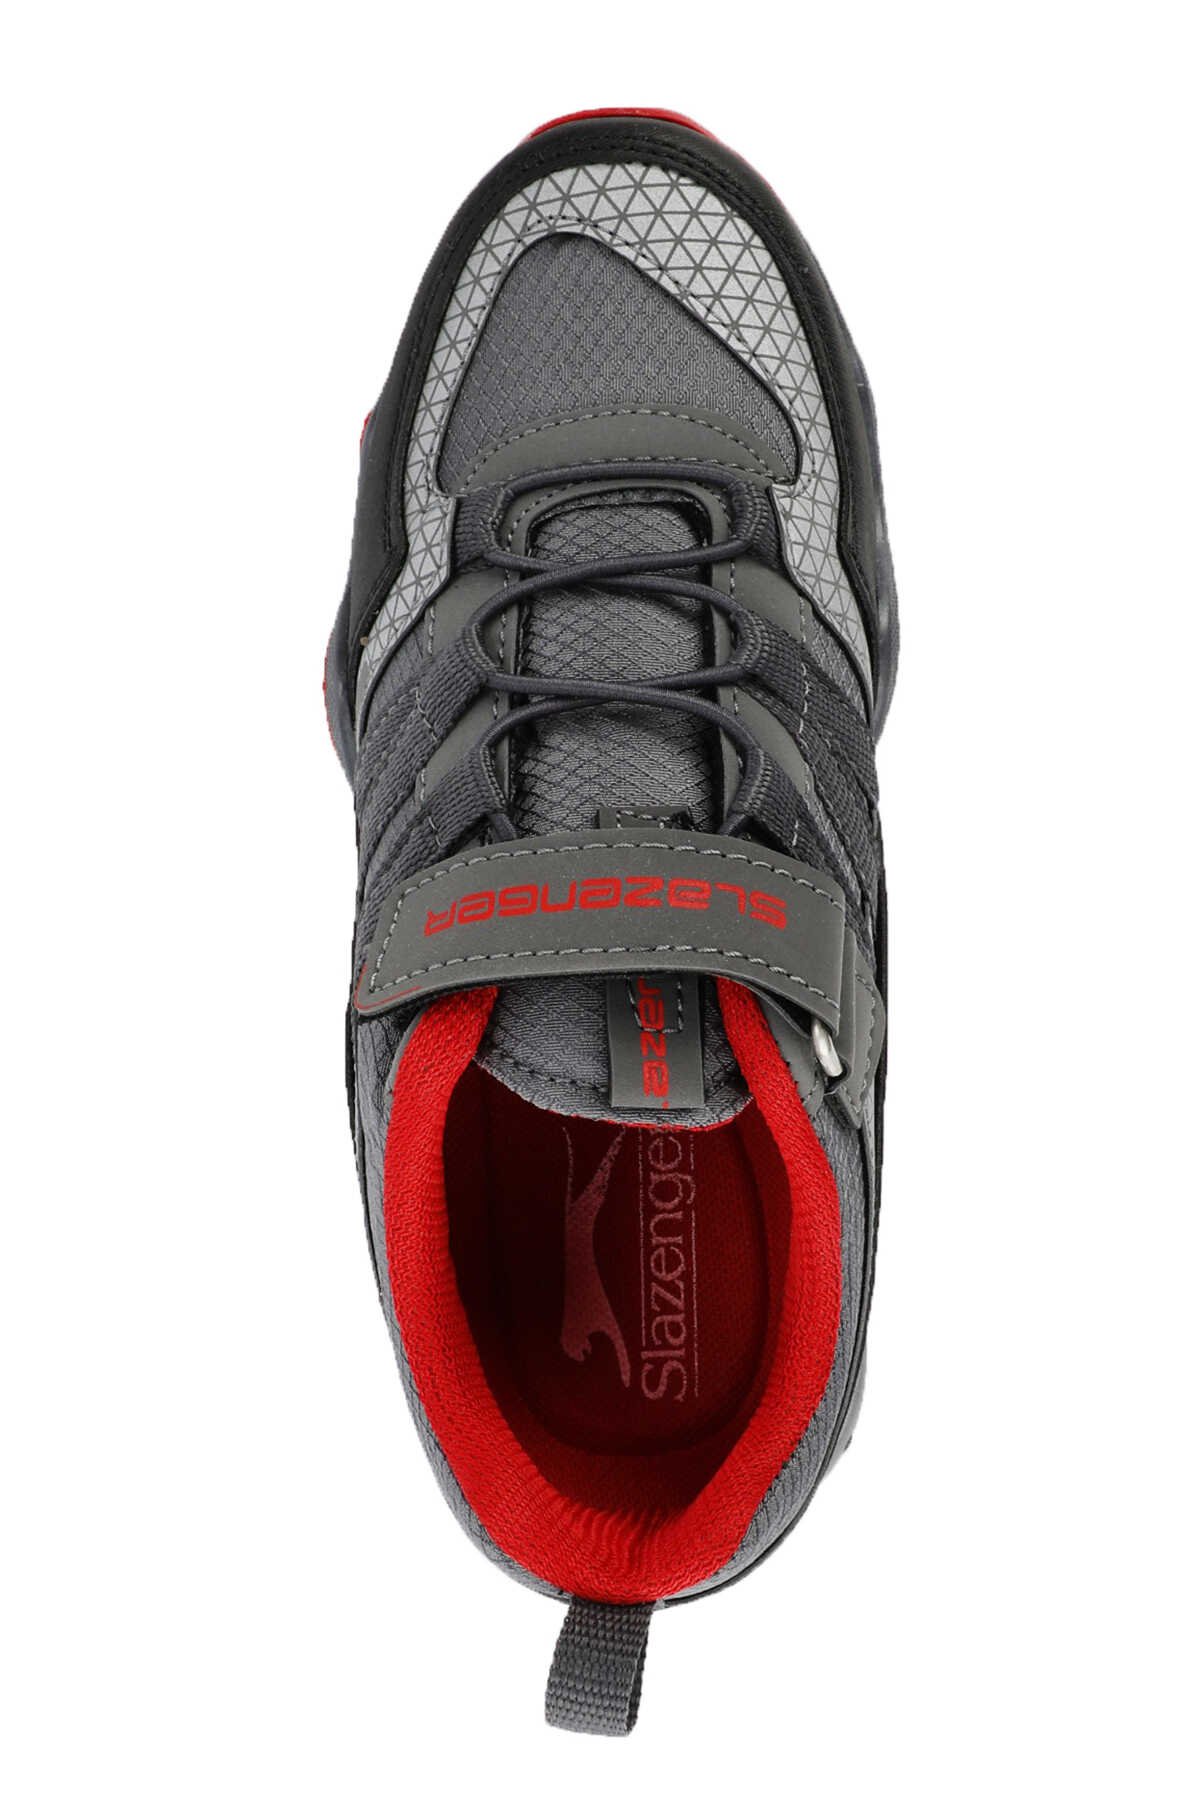 Slazenger ALDONA Sneaker Erkek Çocuk Ayakkabı Koyu Gri / Siyah